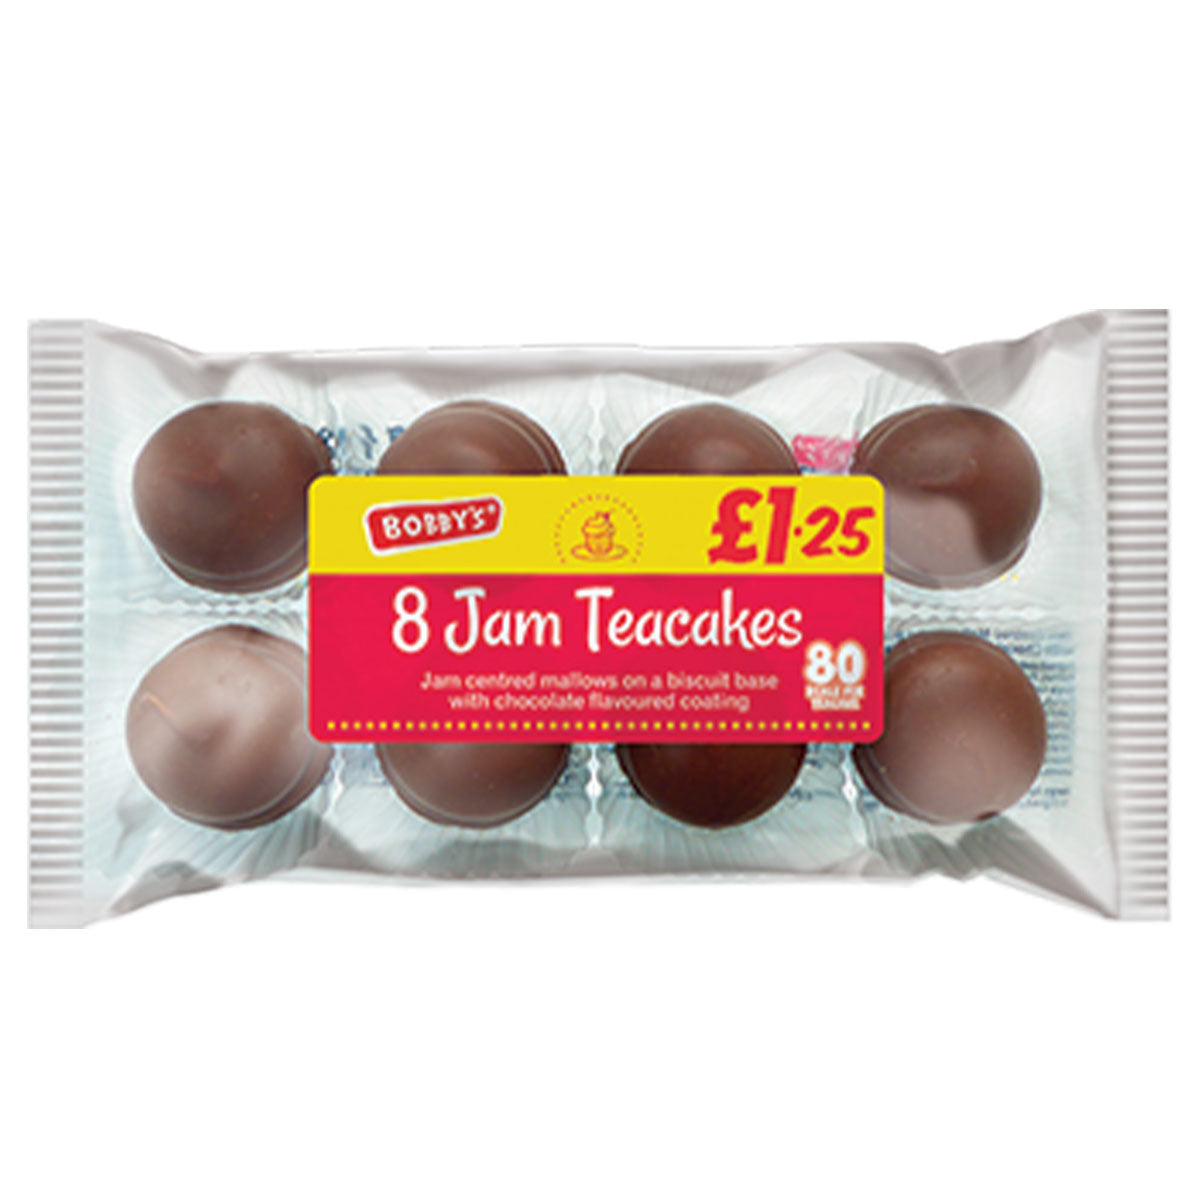 8 Bobbys - Jam Teacakes - 147g in a plastic bag.